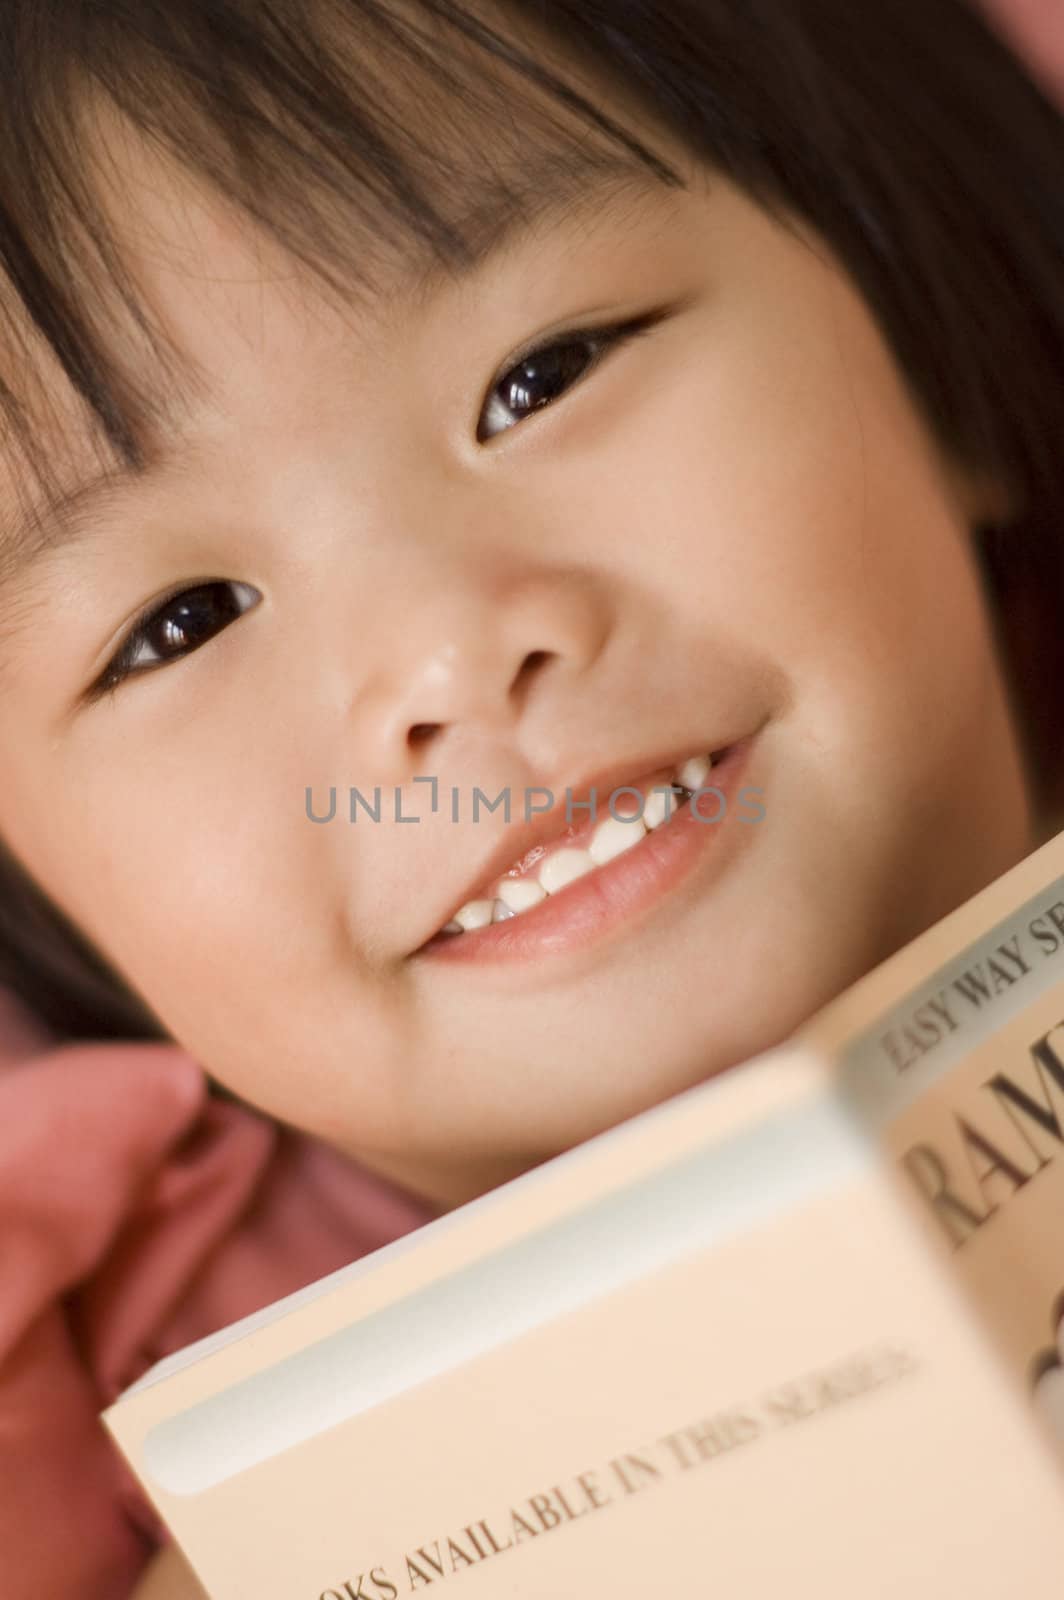 little girl reading

